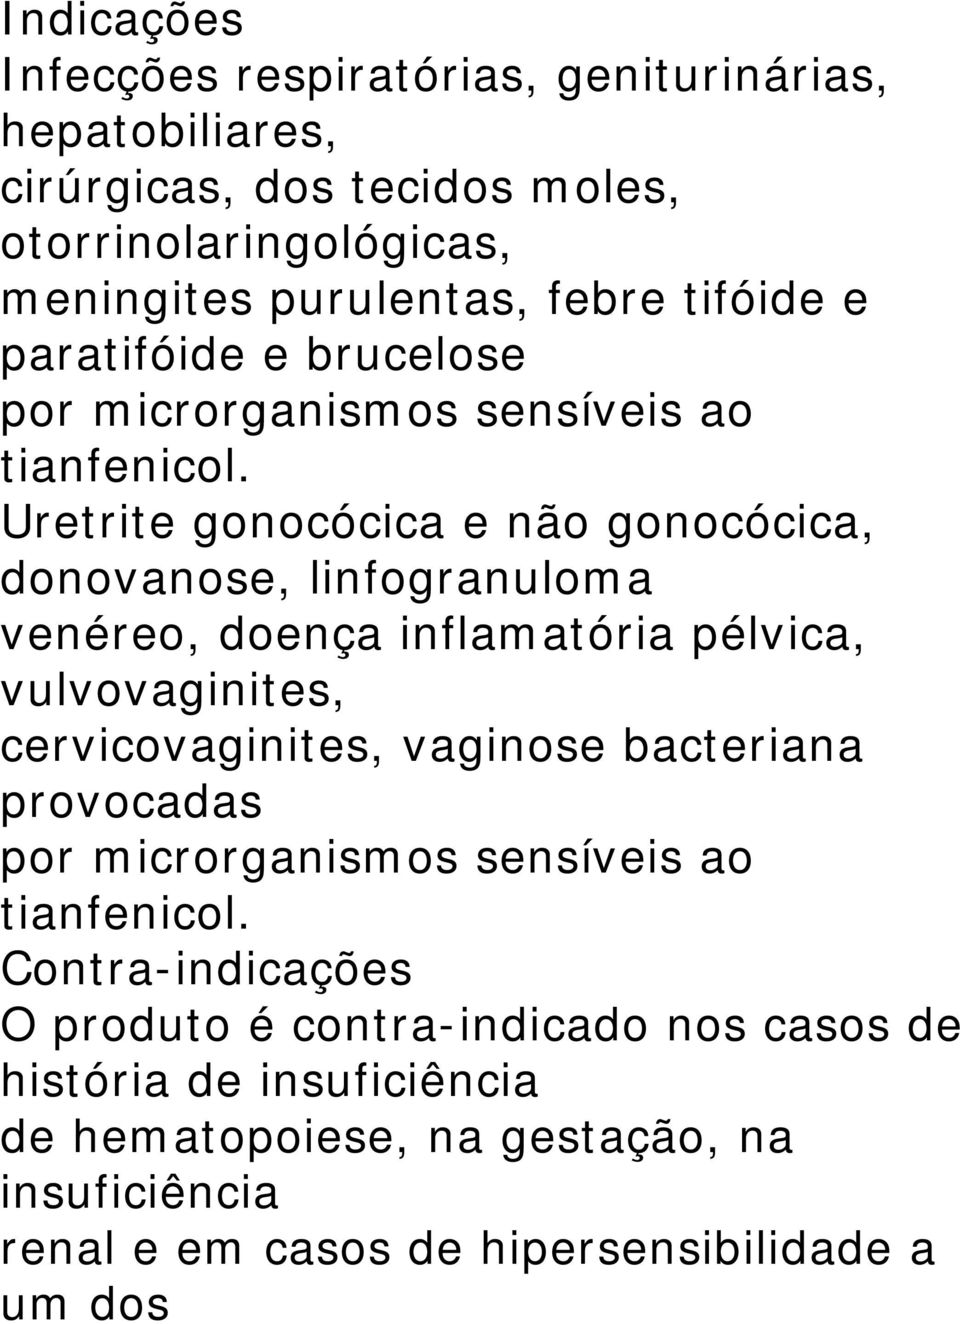 Uretrite gonocócica e não gonocócica, donovanose, linfogranuloma venéreo, doença inflamatória pélvica, vulvovaginites, cervicovaginites, vaginose